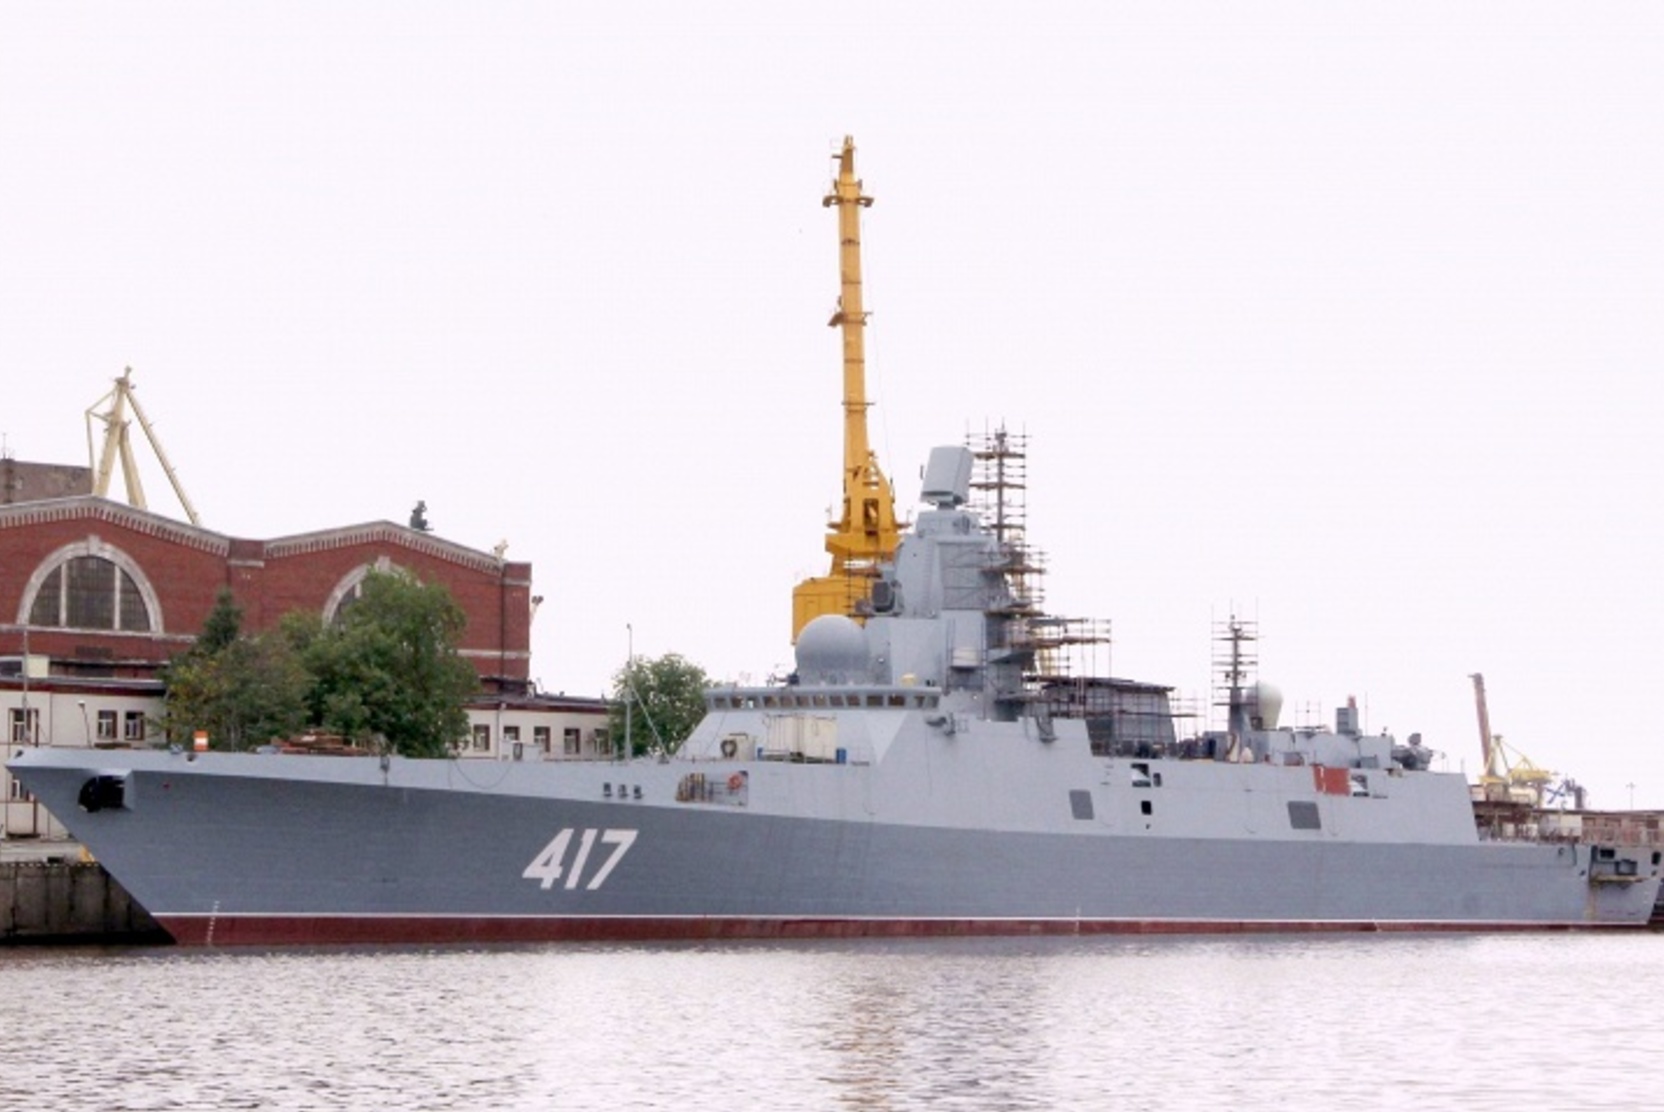 Знаменательное событие. Путин оценил выход на боевую службу фрегата Адмирал Горшков